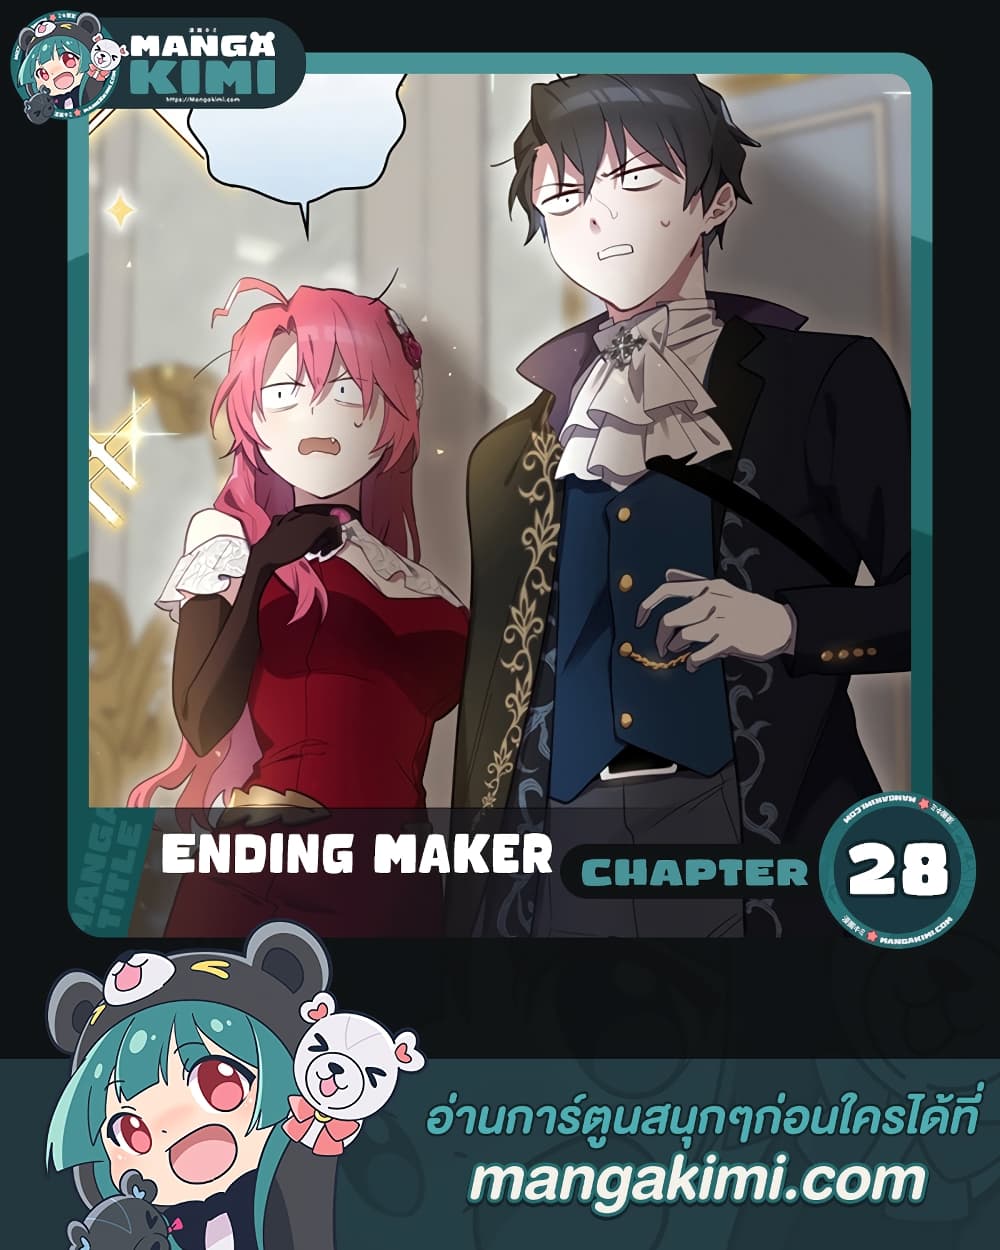 Ending Maker 28 (1)